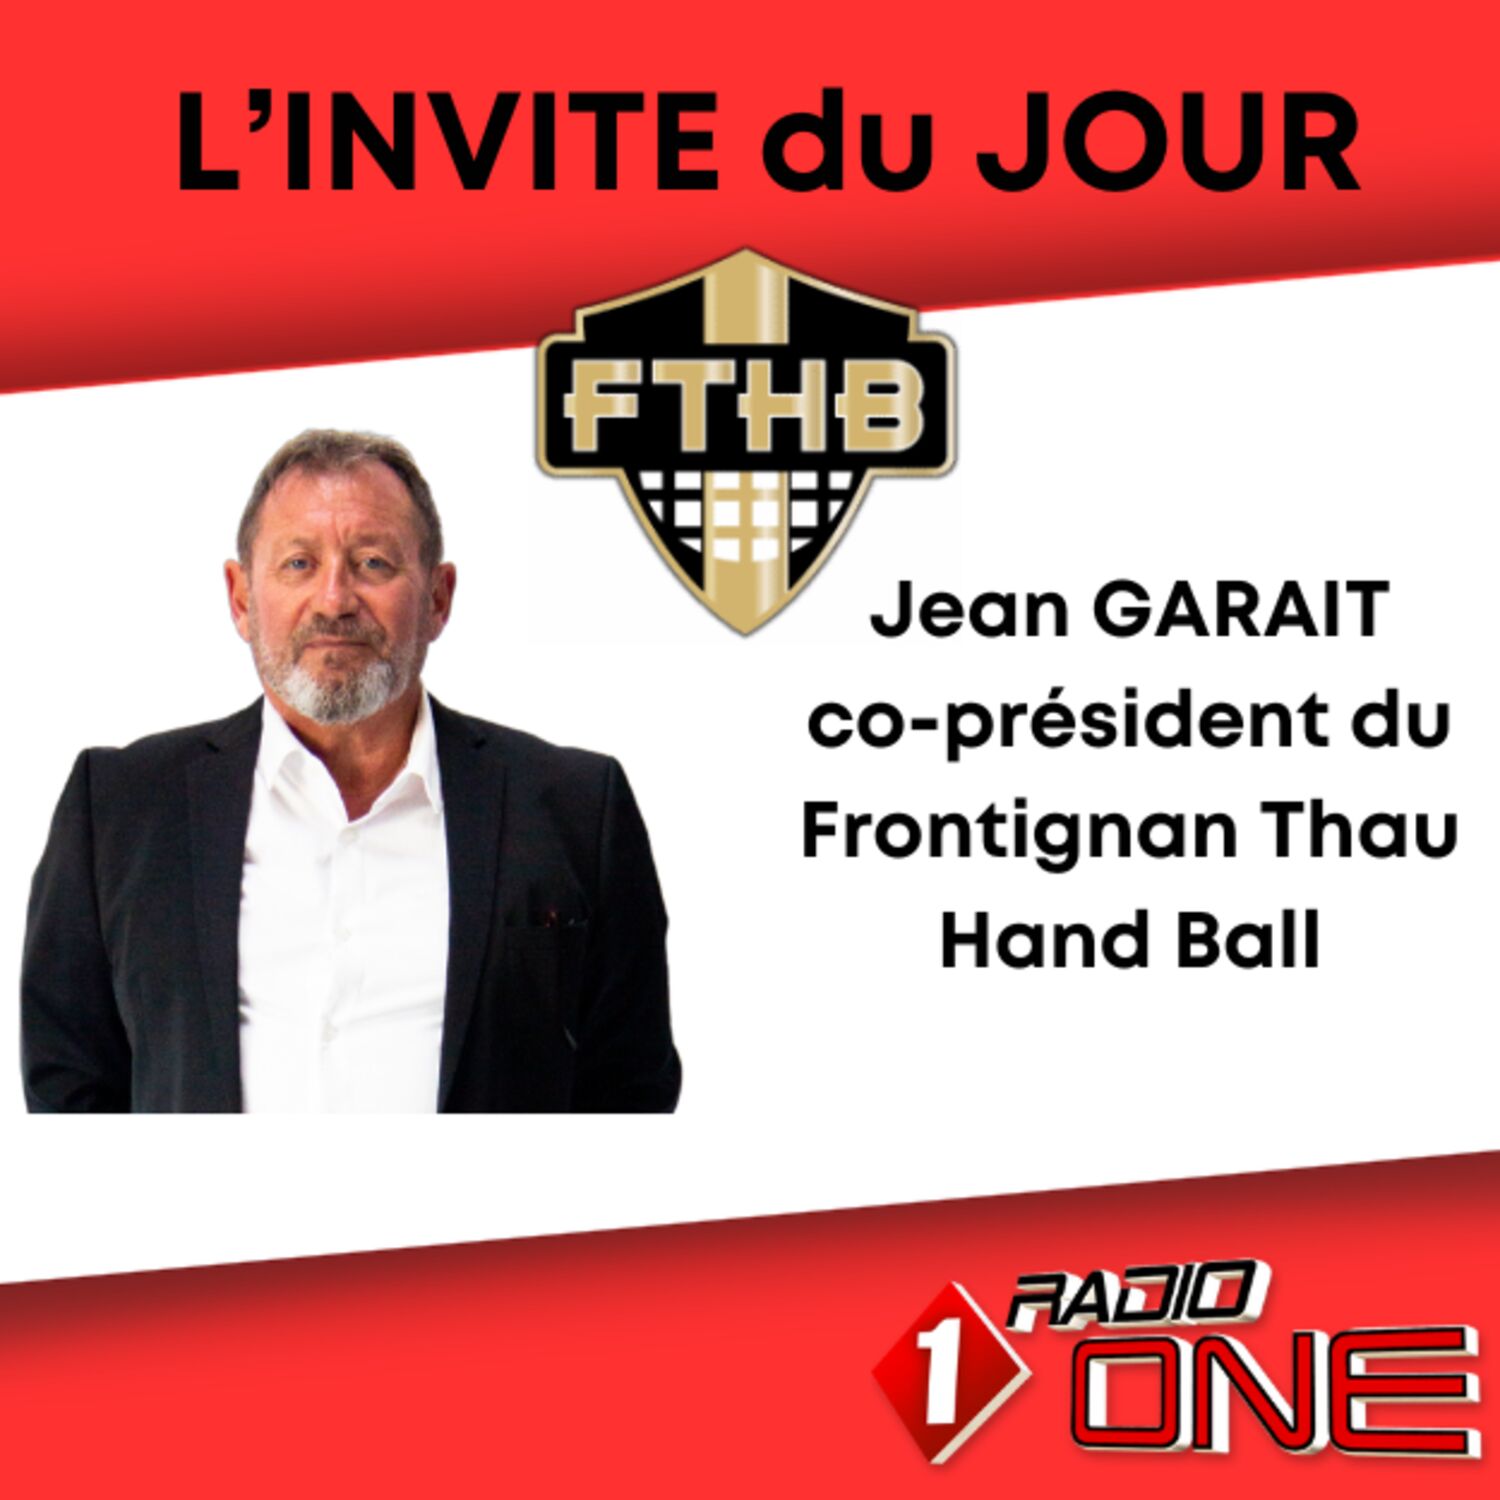 Jean GARAIT Co-Président du Frontignan Thau Hand Ball